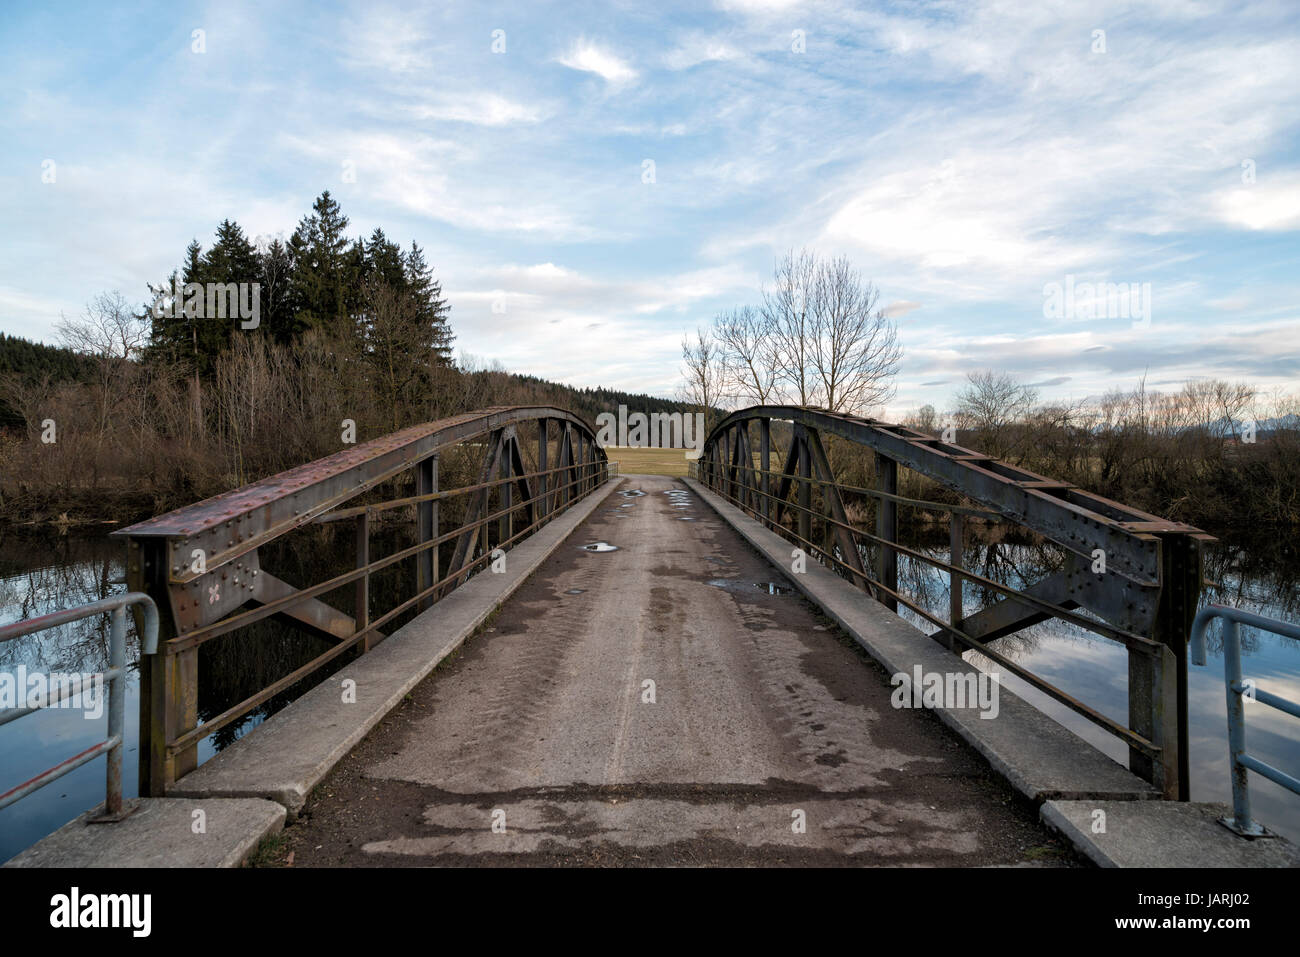 Brücke über die Wertach am Heubrückenweg beim Bachtelsee, Biessenhofen, Bayern, Deutschland. Ponte in prossimità di Bissenhofen, Baviera, Germania. Foto Stock